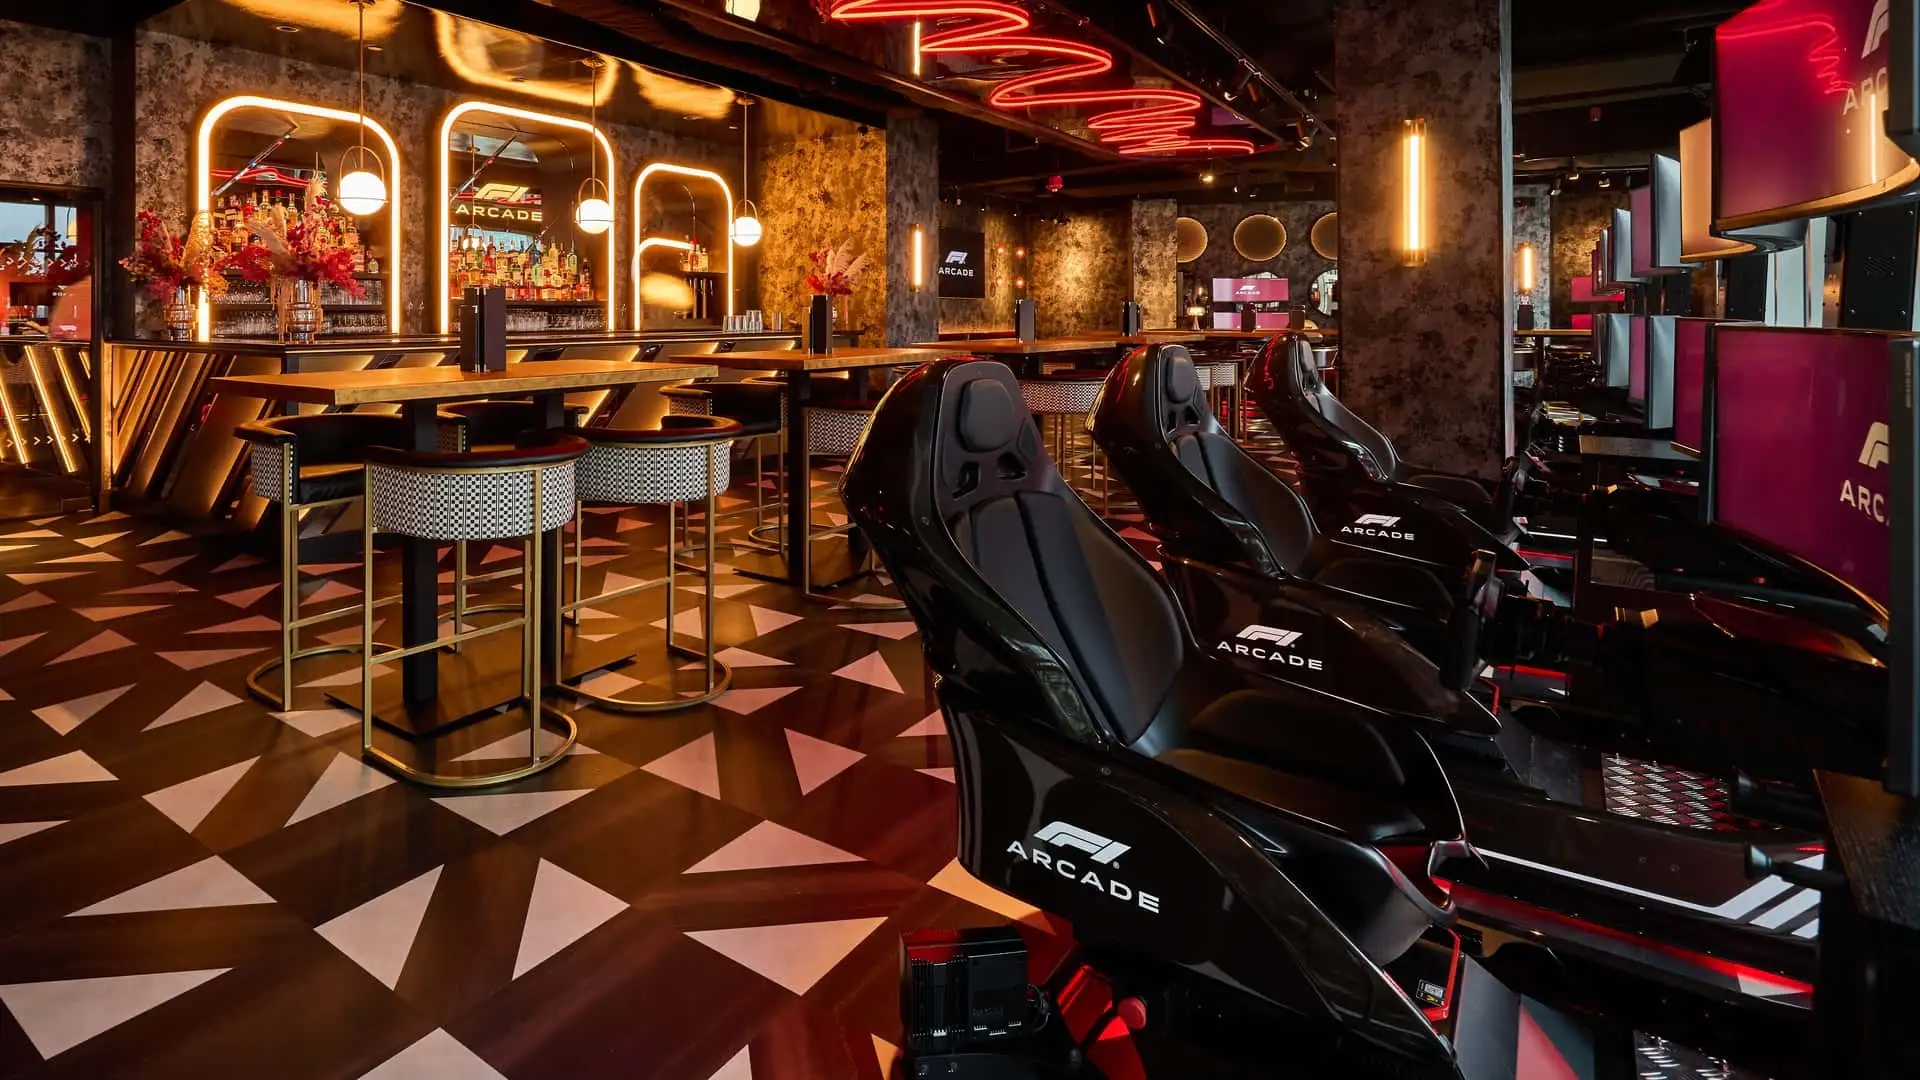 Het F1 Arcade restaurant is geopend in Boston en biedt heerlijk eten en een ritje achter het stuur van een Formule 1 auto.